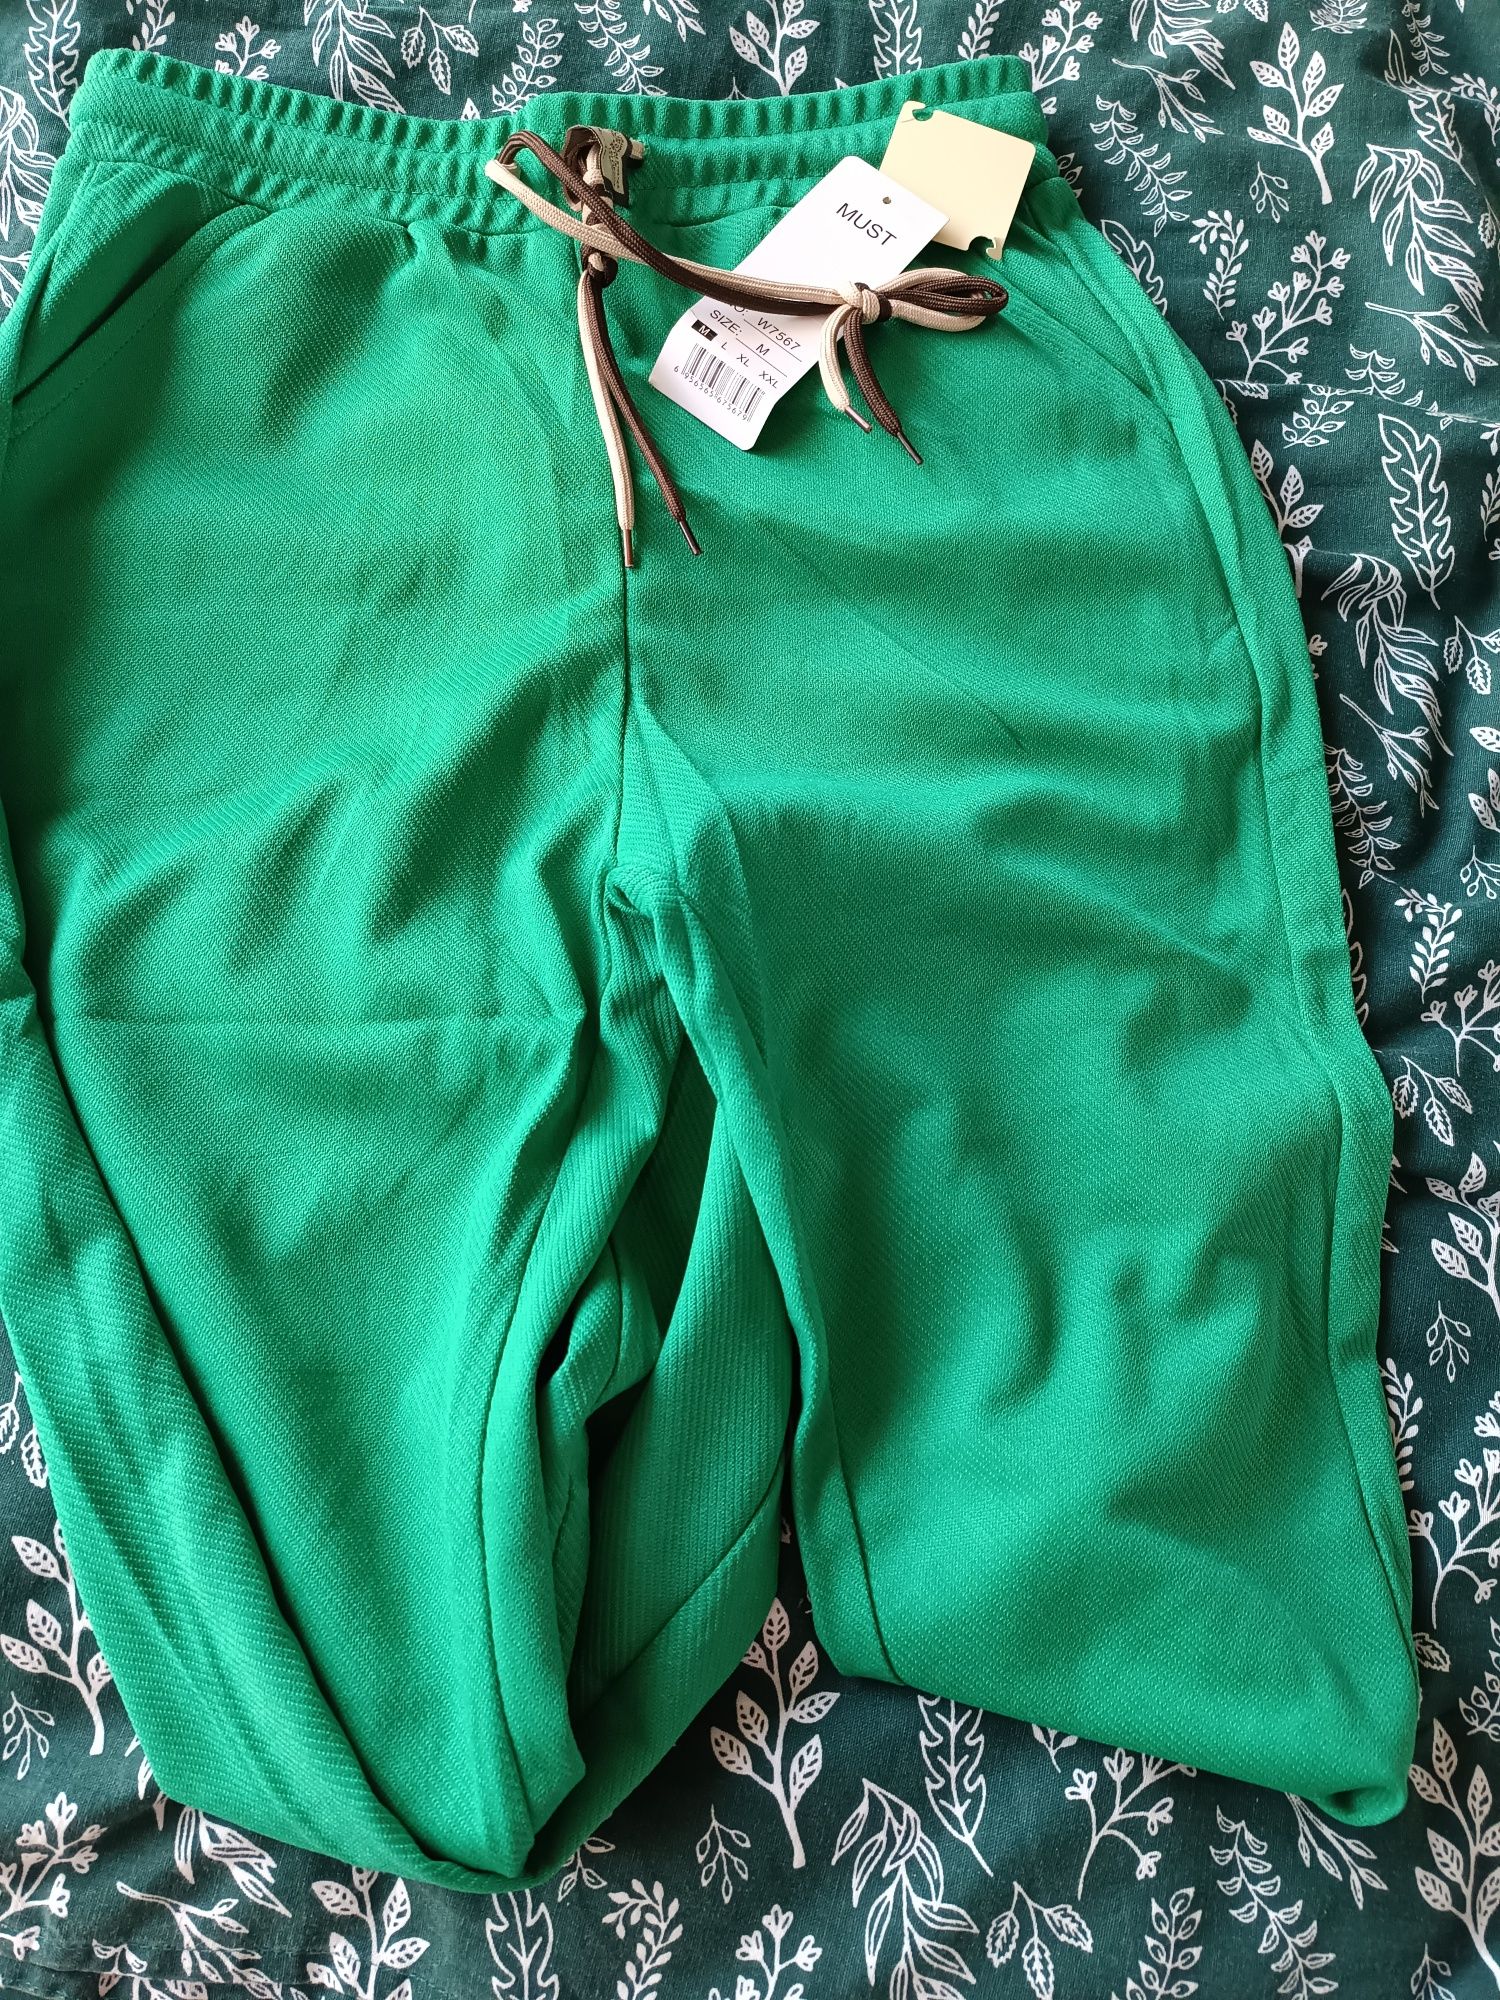 Spodnie zielone.